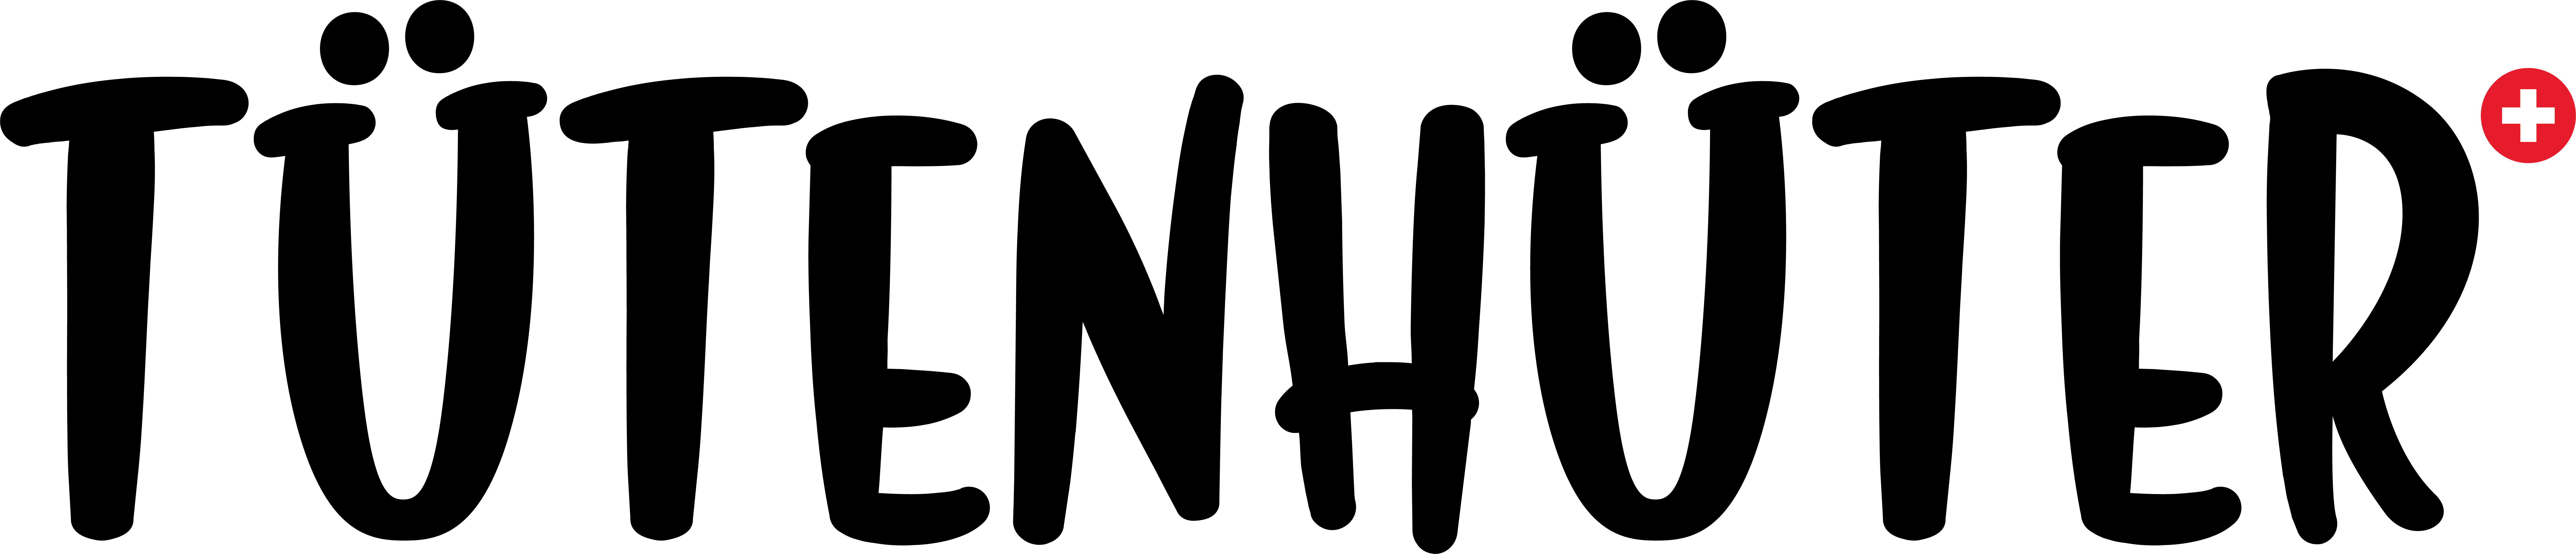 Logo_Tütenhüter